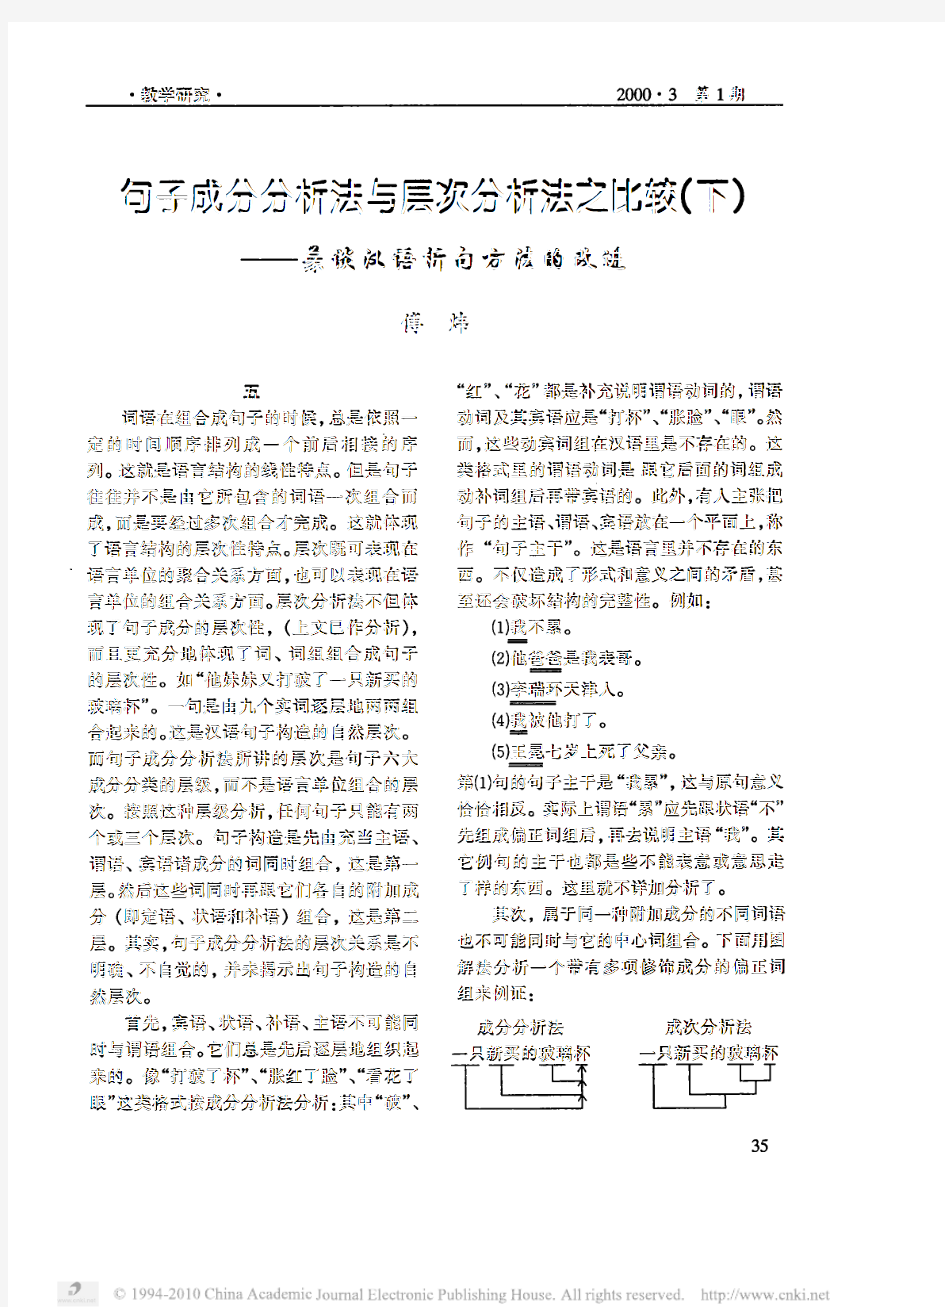 句子成分分析法与层次分析法之比较_下_兼谈汉语析句方法的改进